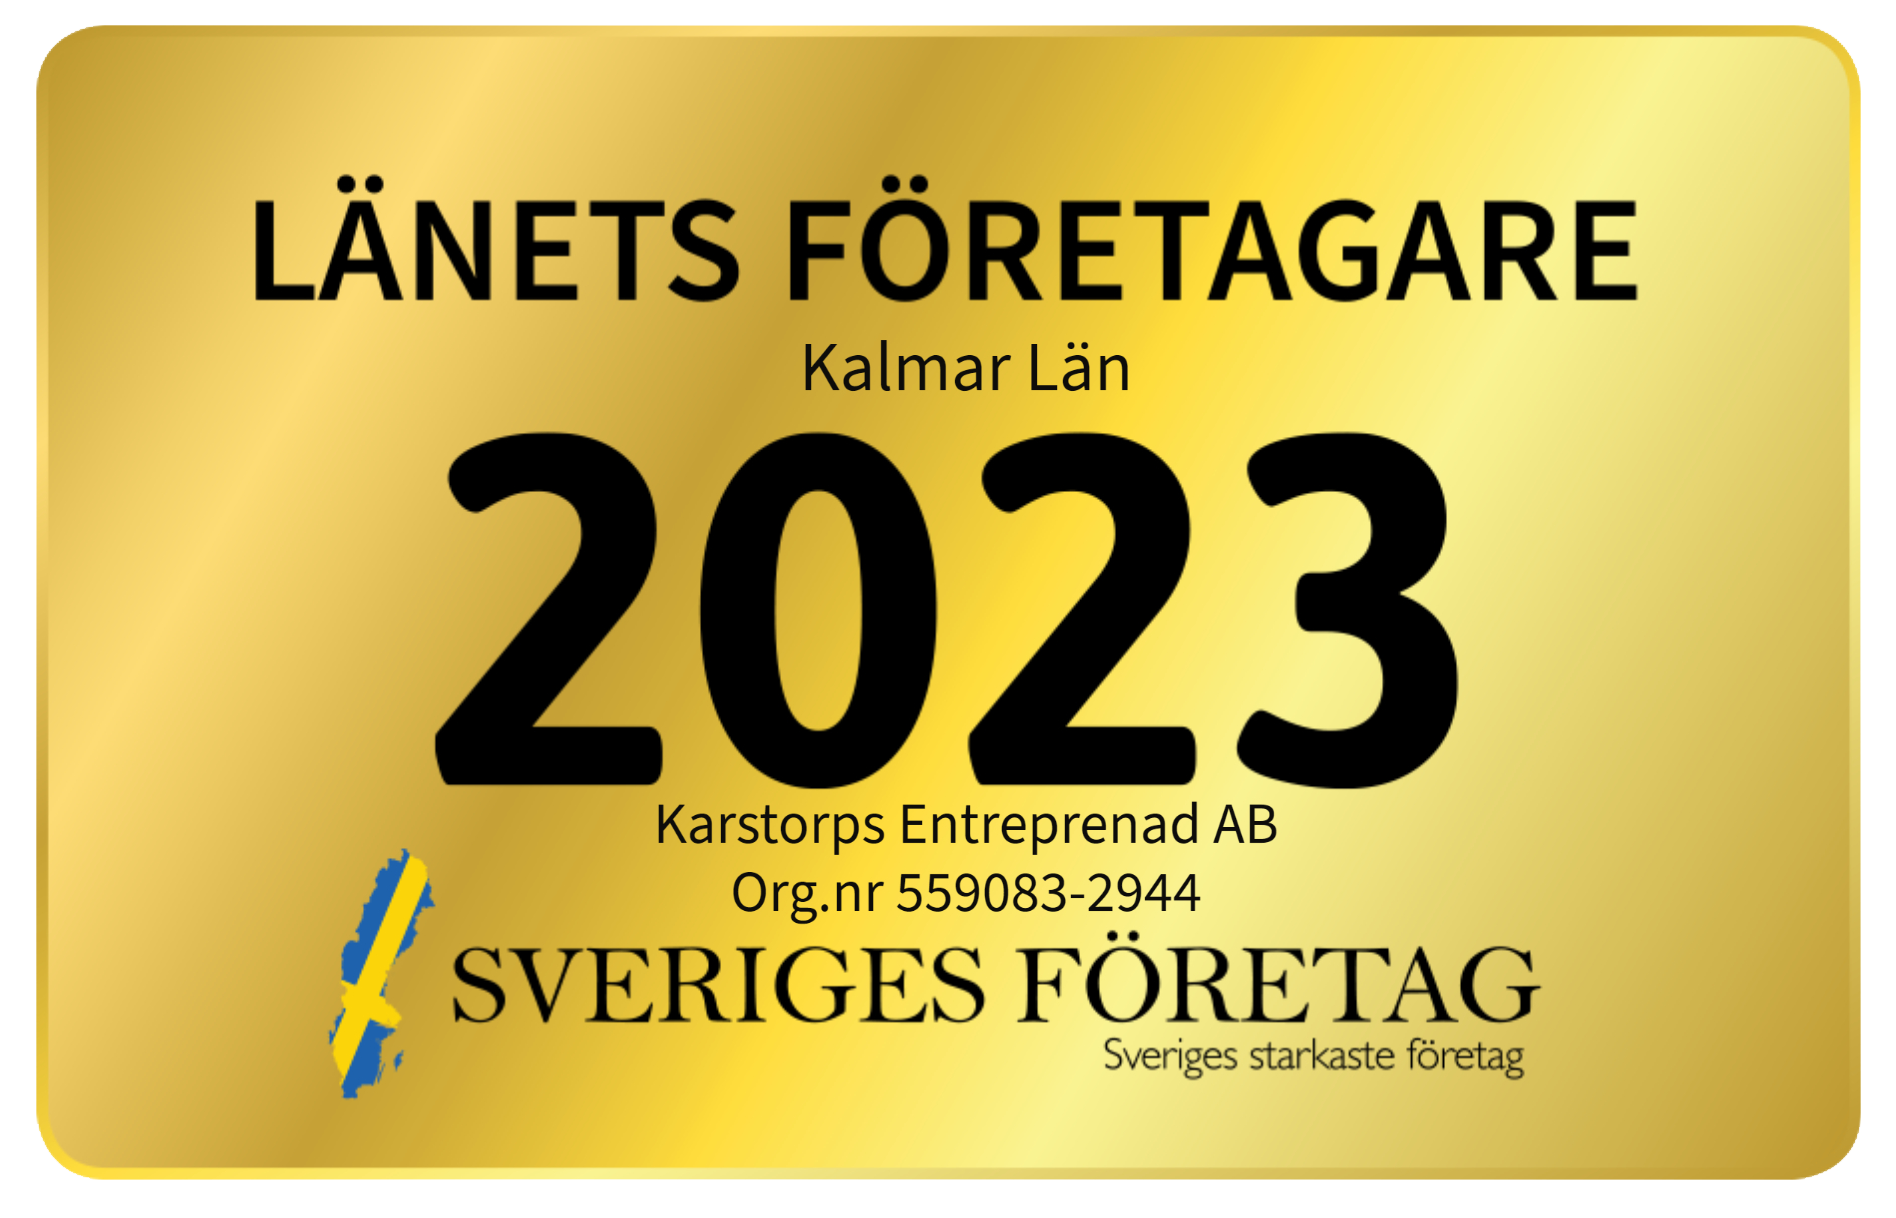 Länets företagare 2023 - Karstorps Entreprenad AB